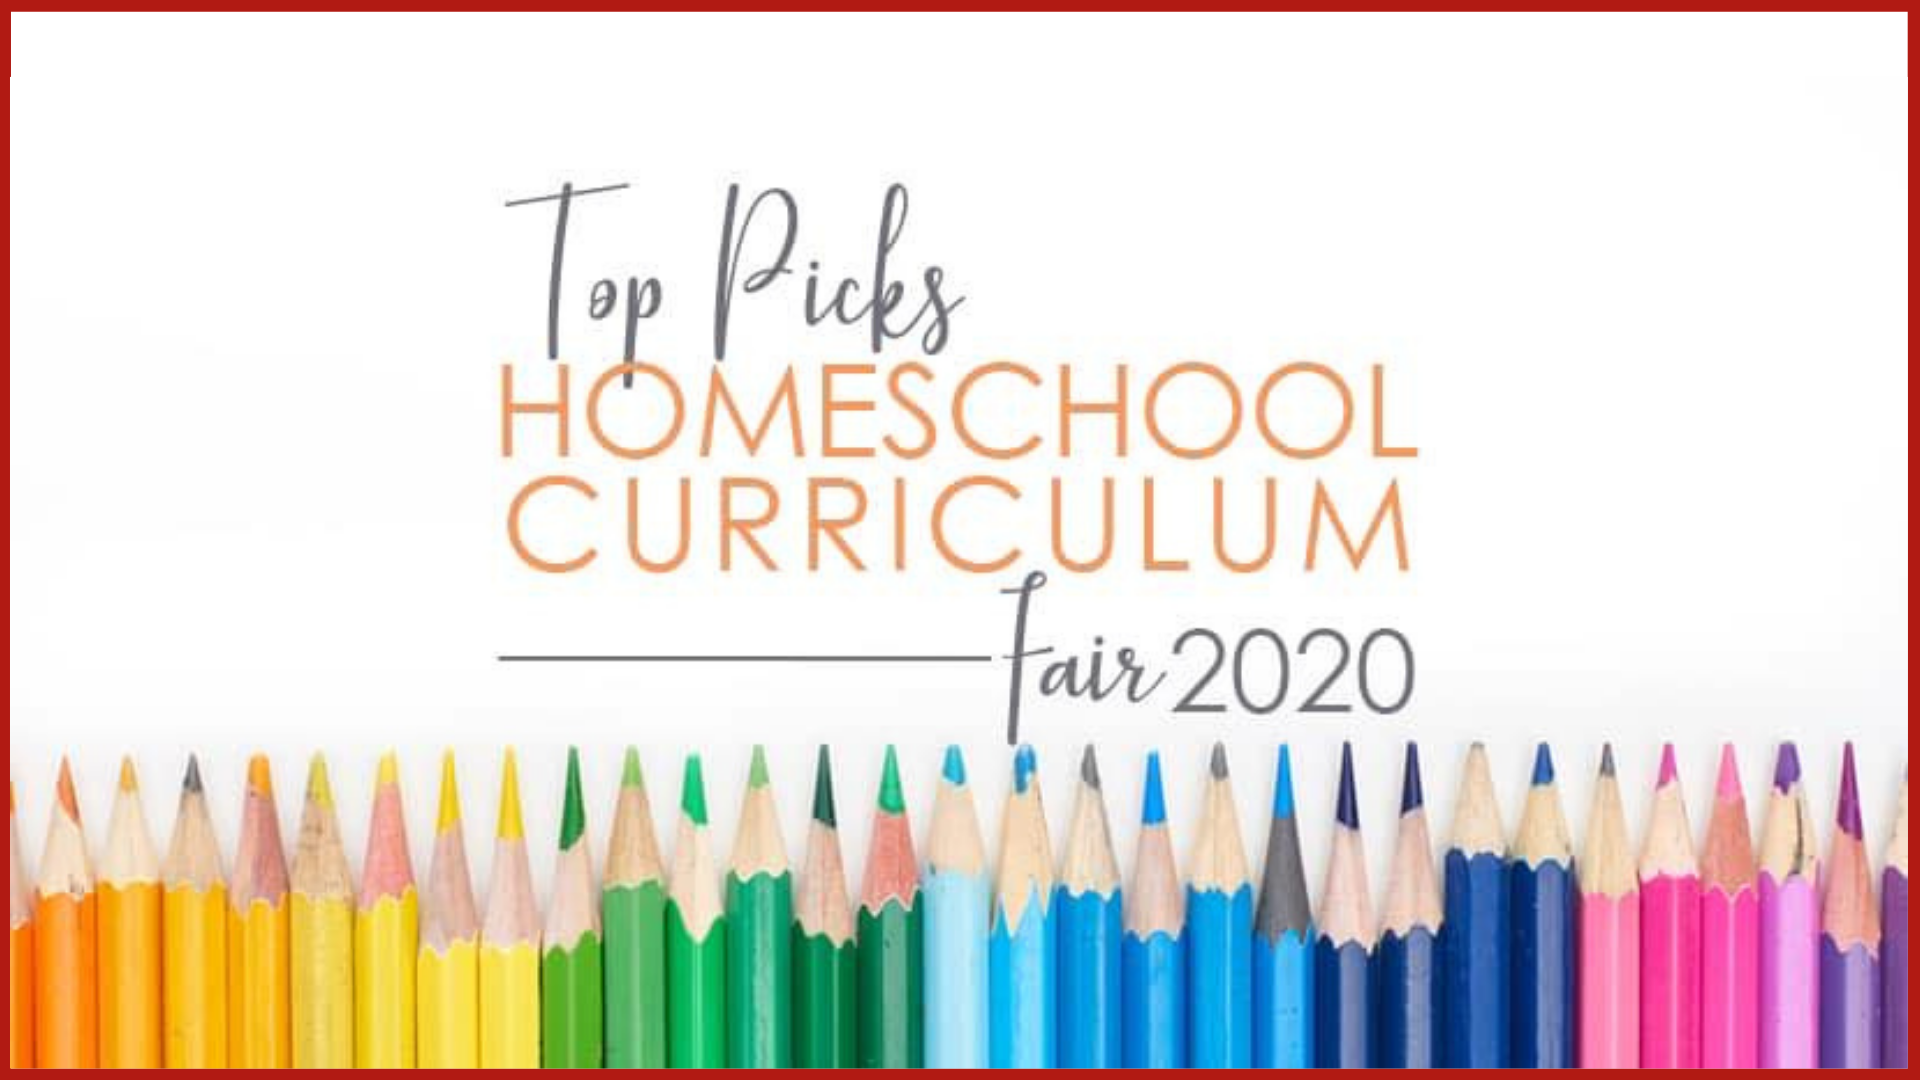 Top Picks Homeschool Curriculum Fair 2020